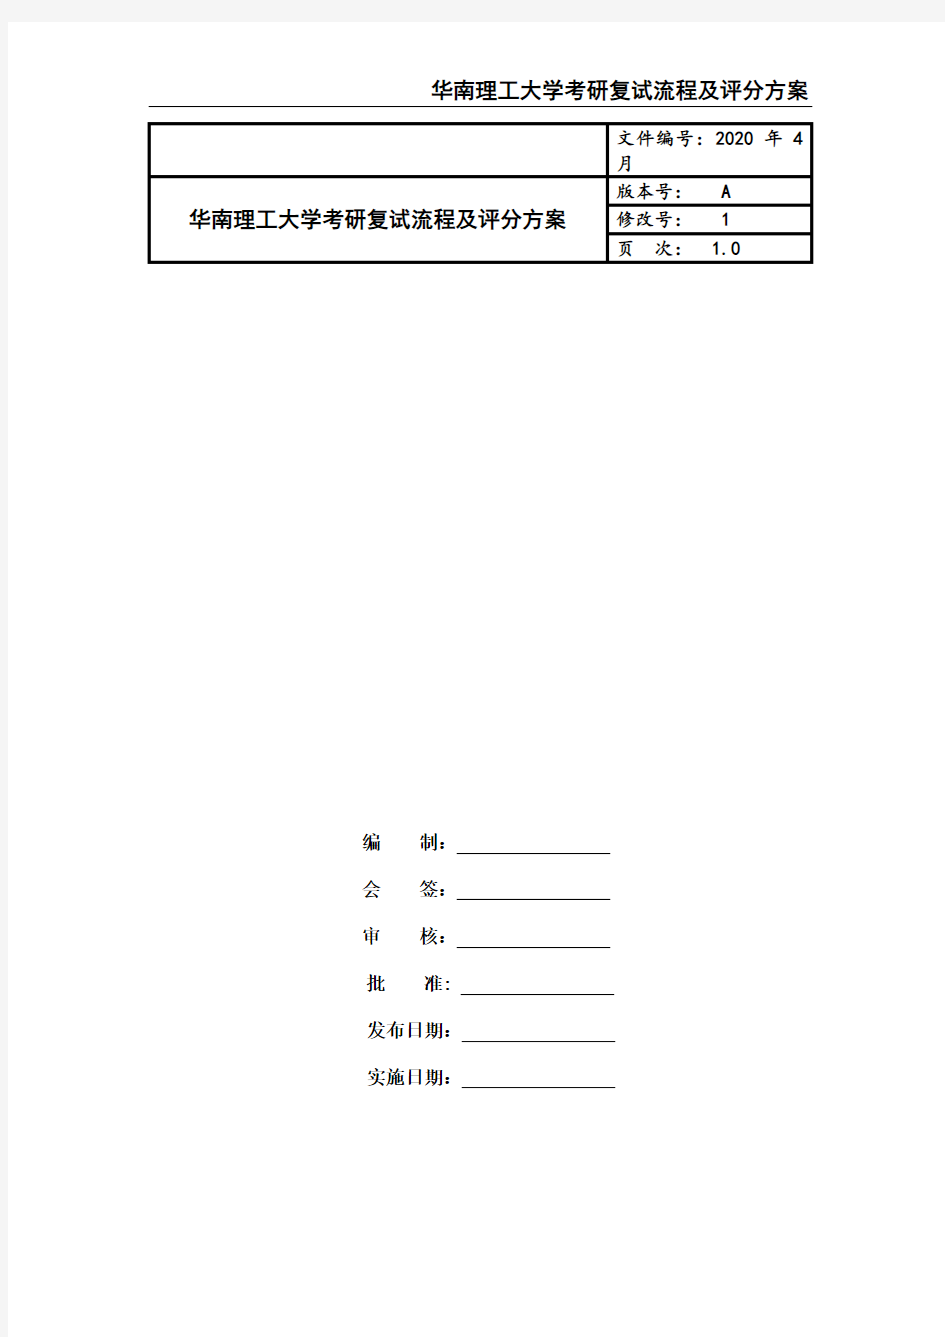 华南理工大学考研复试流程及评分方案